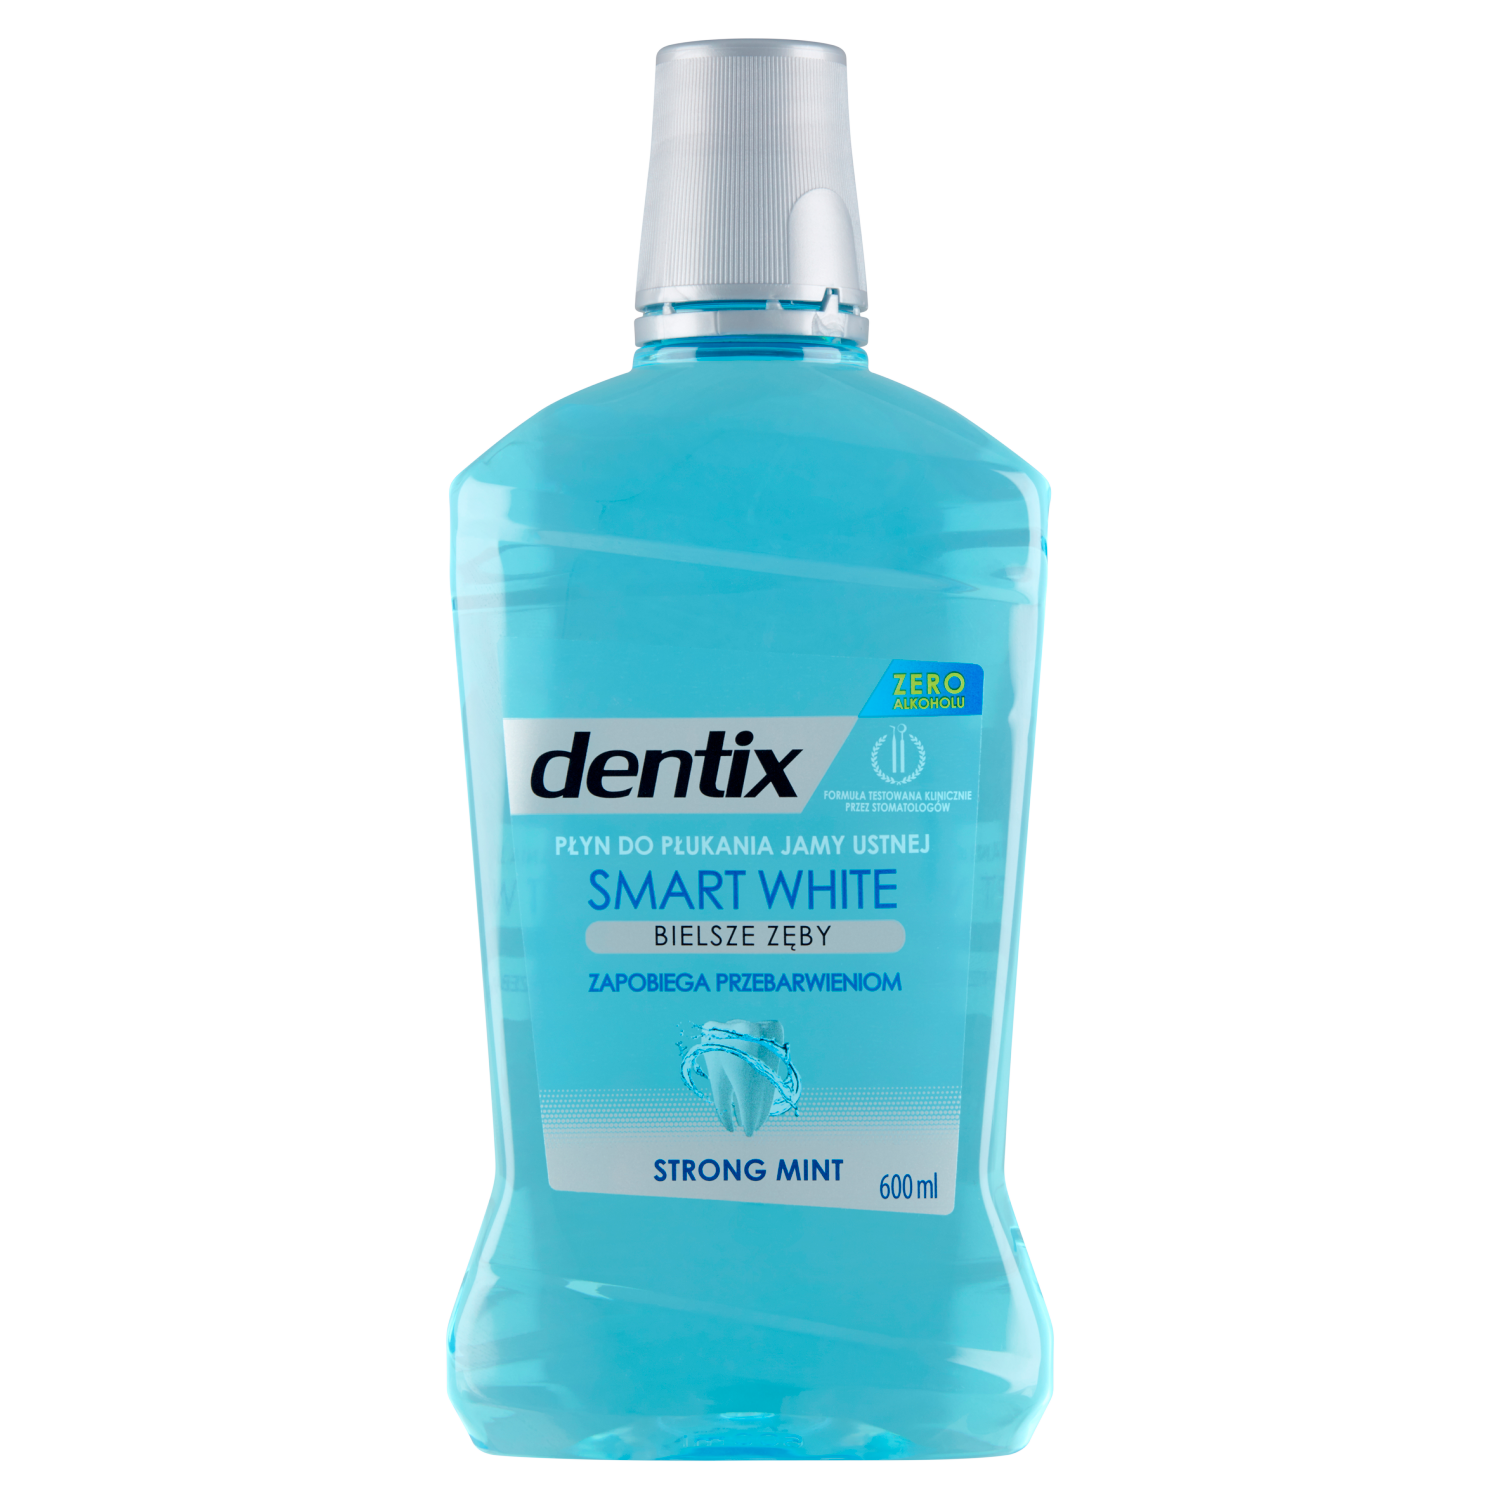 Dentix Smart White жидкость для гигиены полости рта, 600 мл